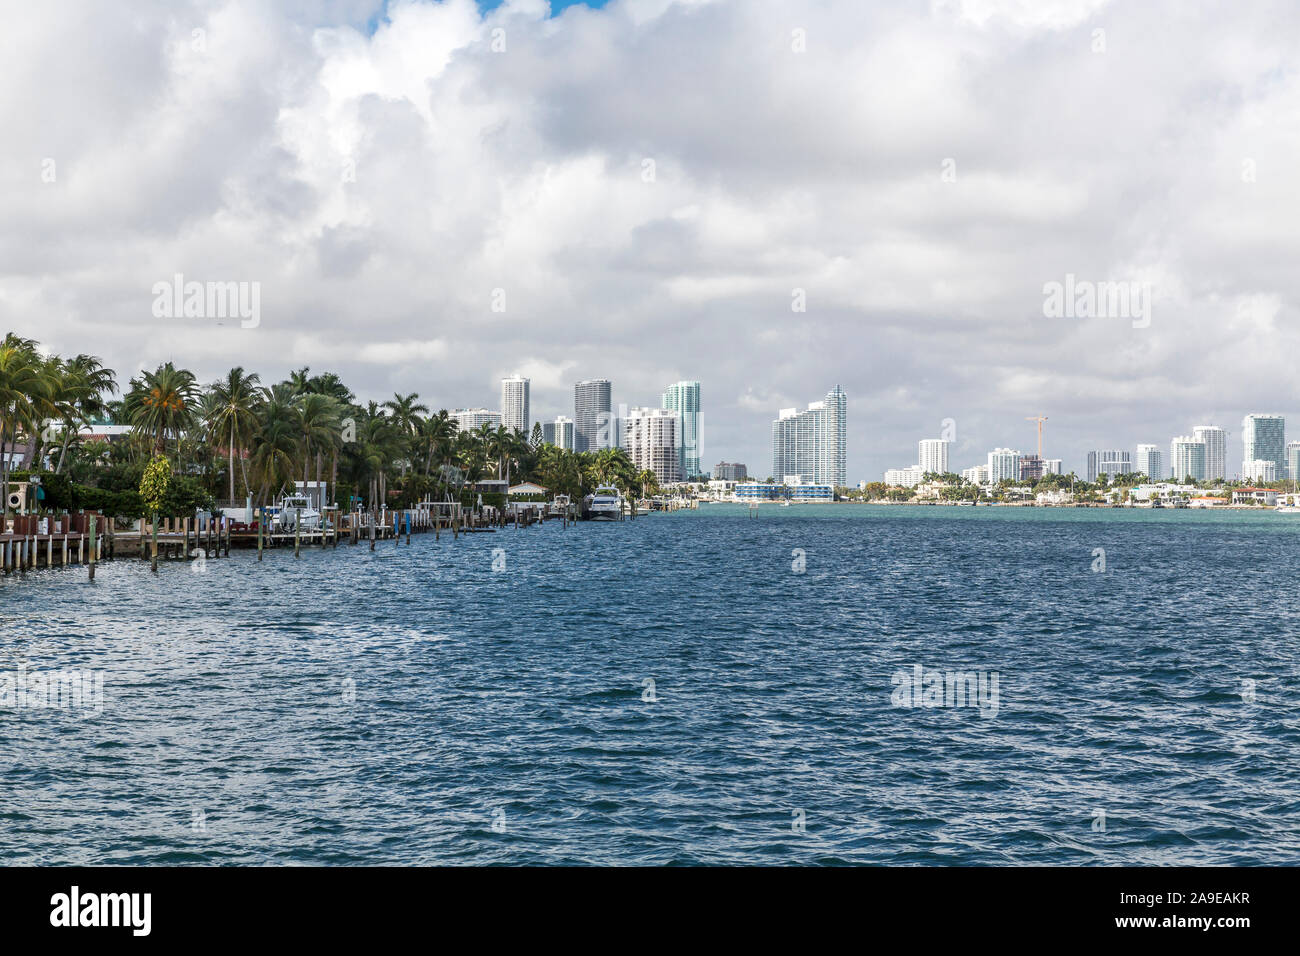 Case di Lusso, Hibiscus Islanda, dietro lo skyline del centro della città, Miami, Miami-Dade County, Florida, USA, America del Nord Foto Stock